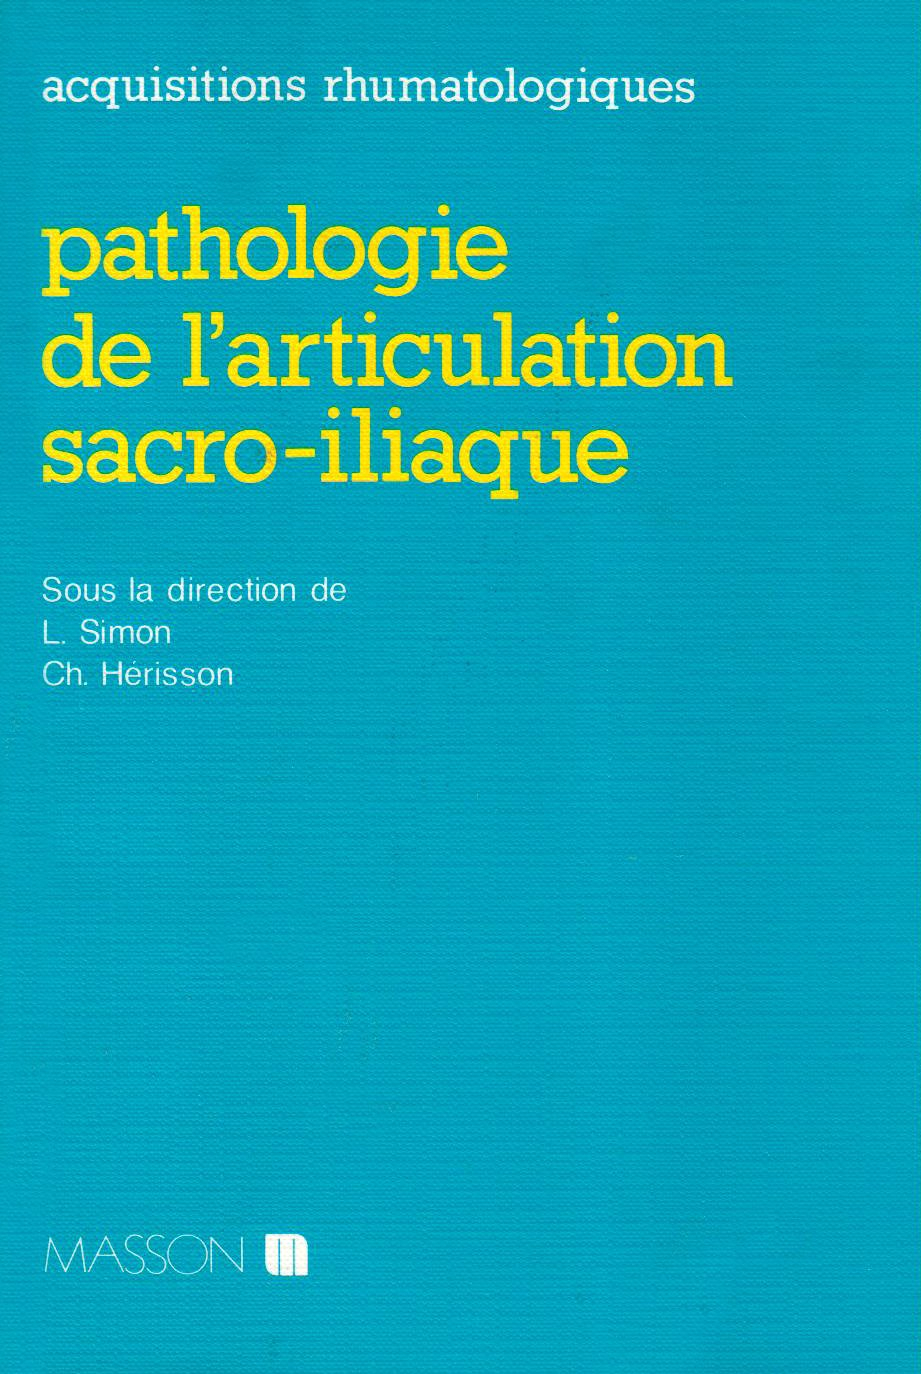 Pathologie de l'articulation sacro-iliaque